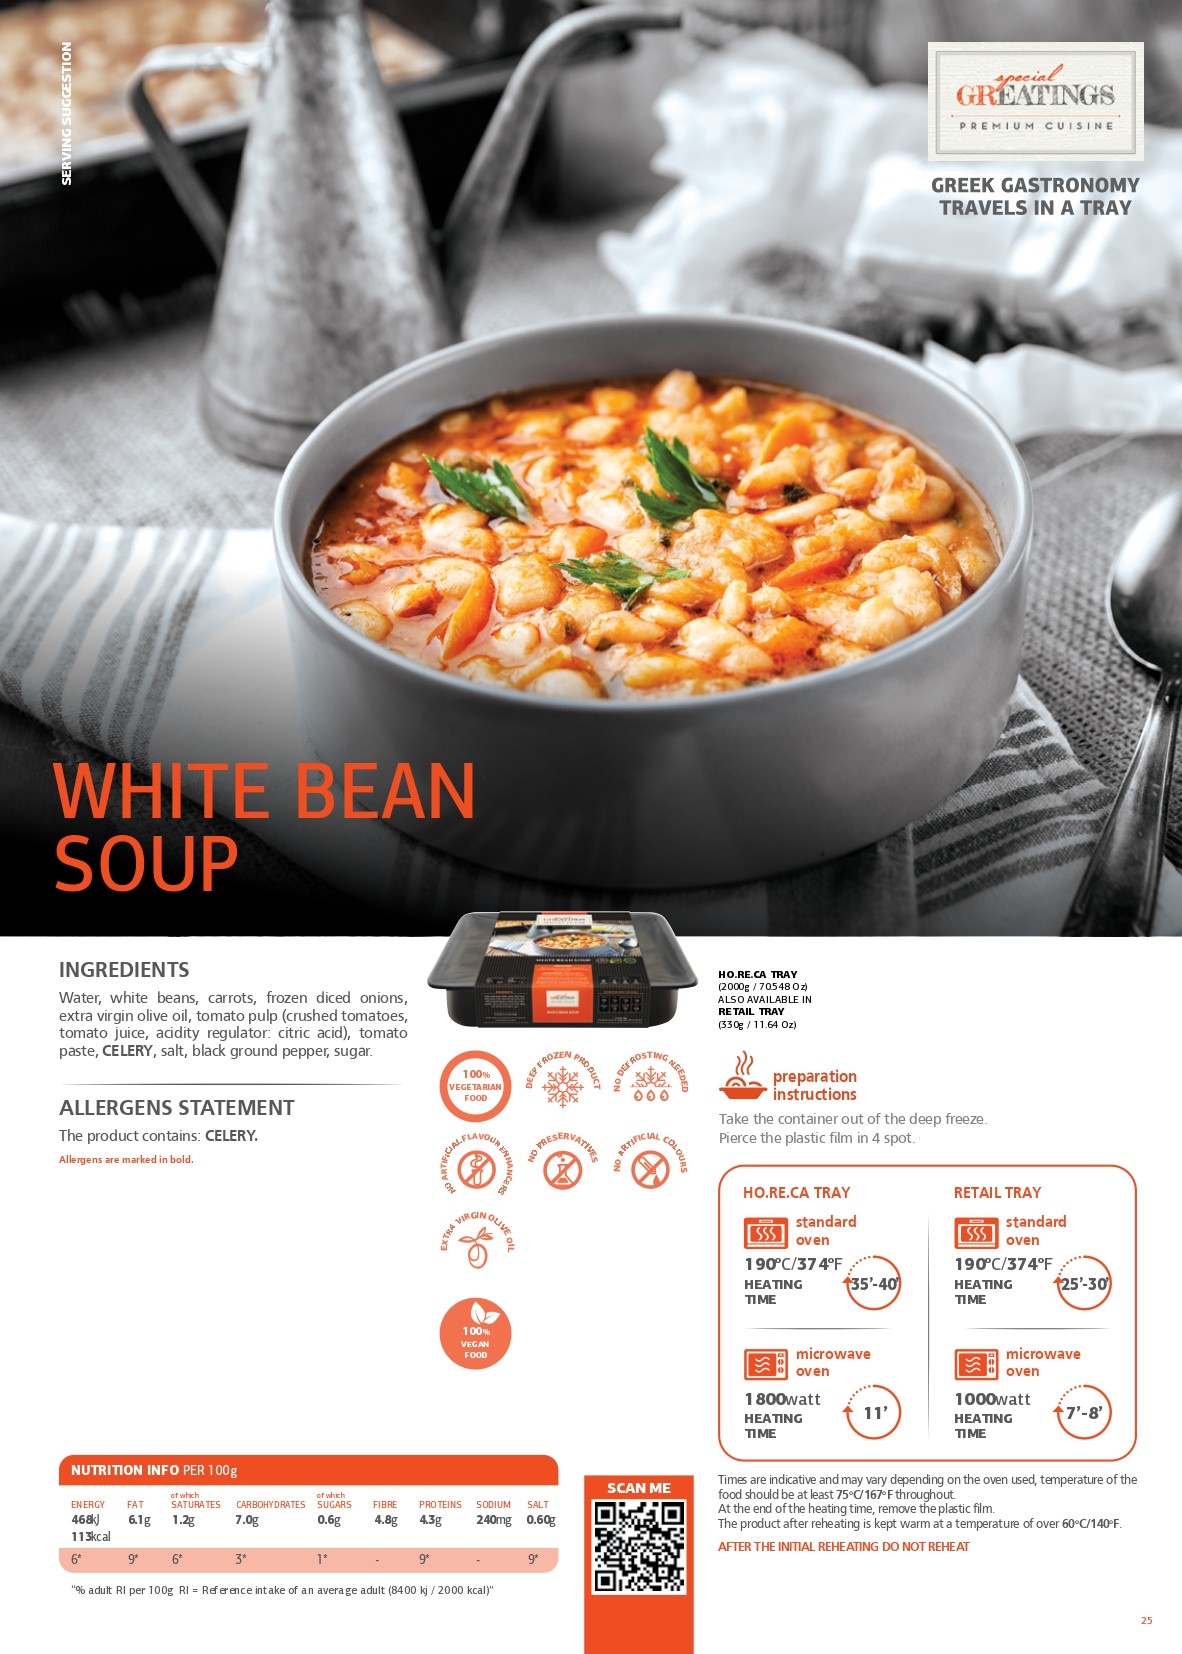 White bean soup pdf image